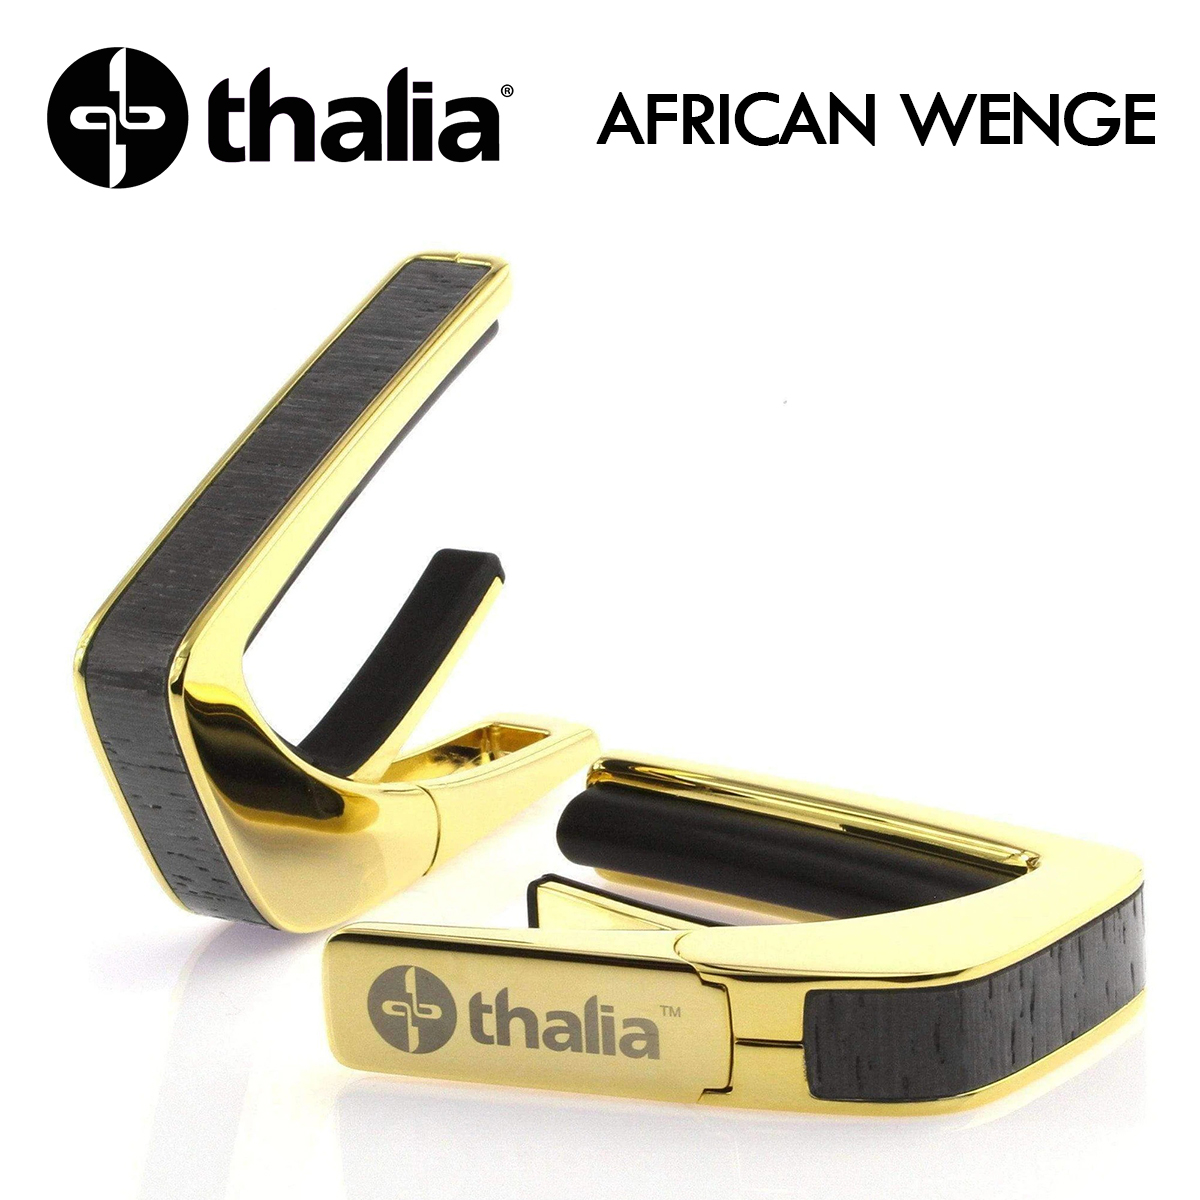 次回入荷分、予約受付中!! Thalia Capos Exotic Wood AFRICAN WENGE -24K Gold- 新品 ギター用カポタスト[タリア][ウェンジ][ゴールド,金][Electric,Acoustic,Bass,Guitar]